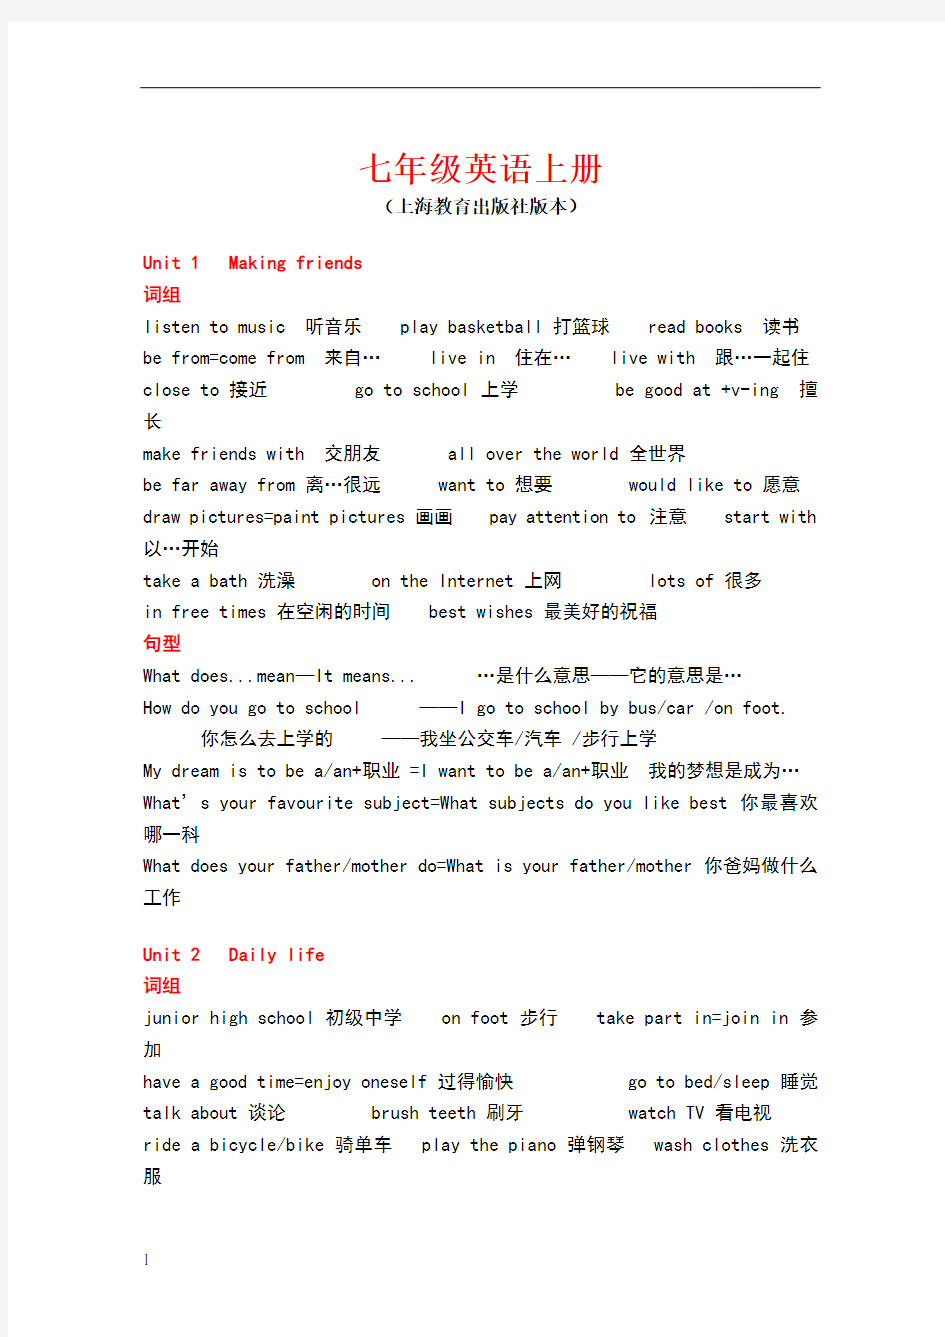 七年级英语上册知识点(上海教育出版社版本)